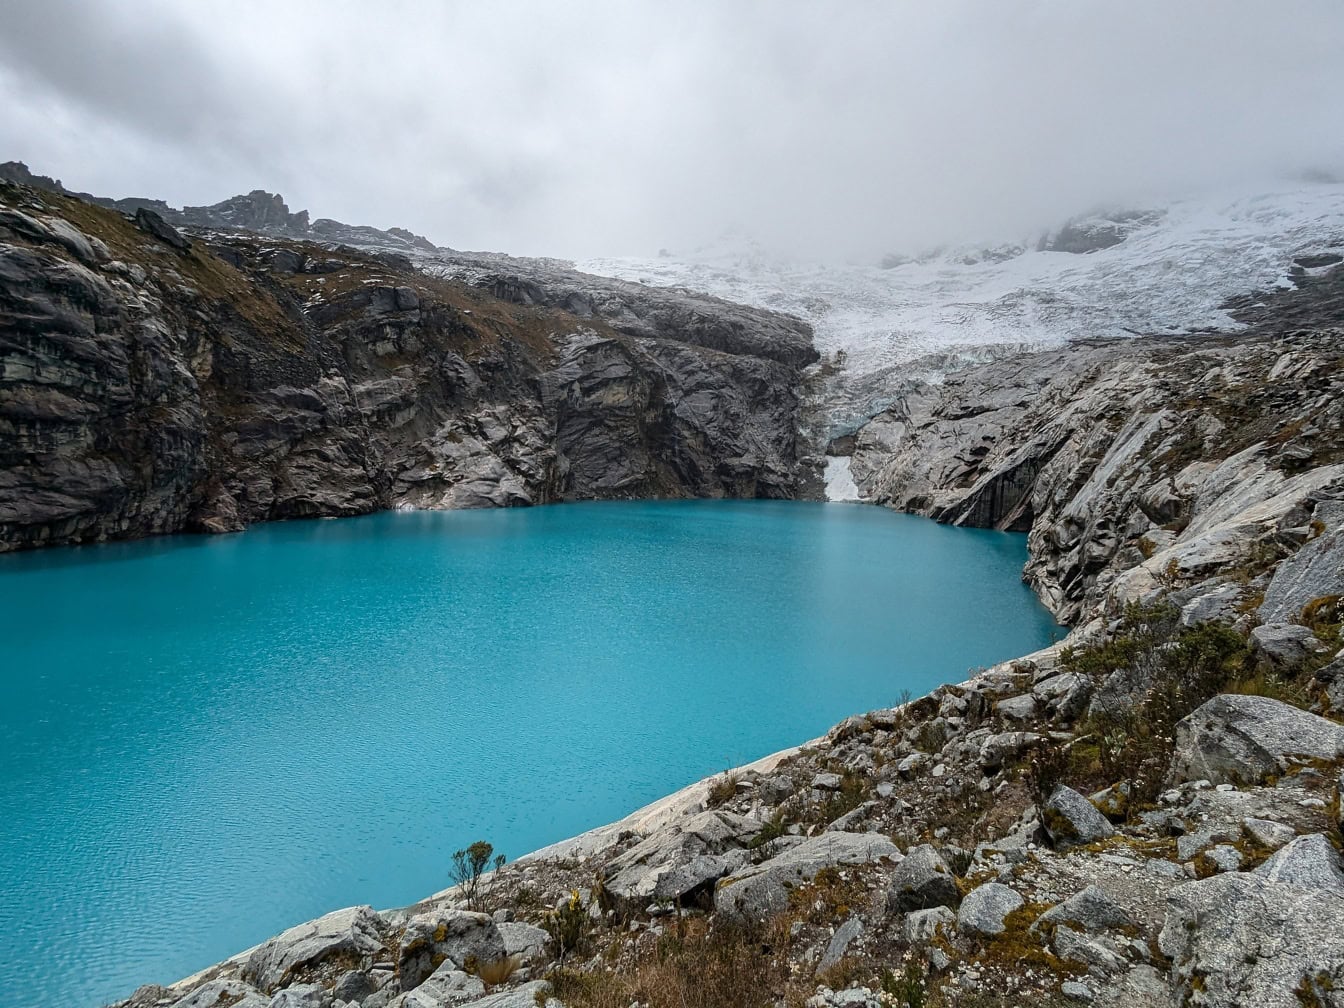 Culoarea albastră turcoaz a lacului 513 la poalele muntelui Nevado Hualcan din parcul național Huascaran din Peru